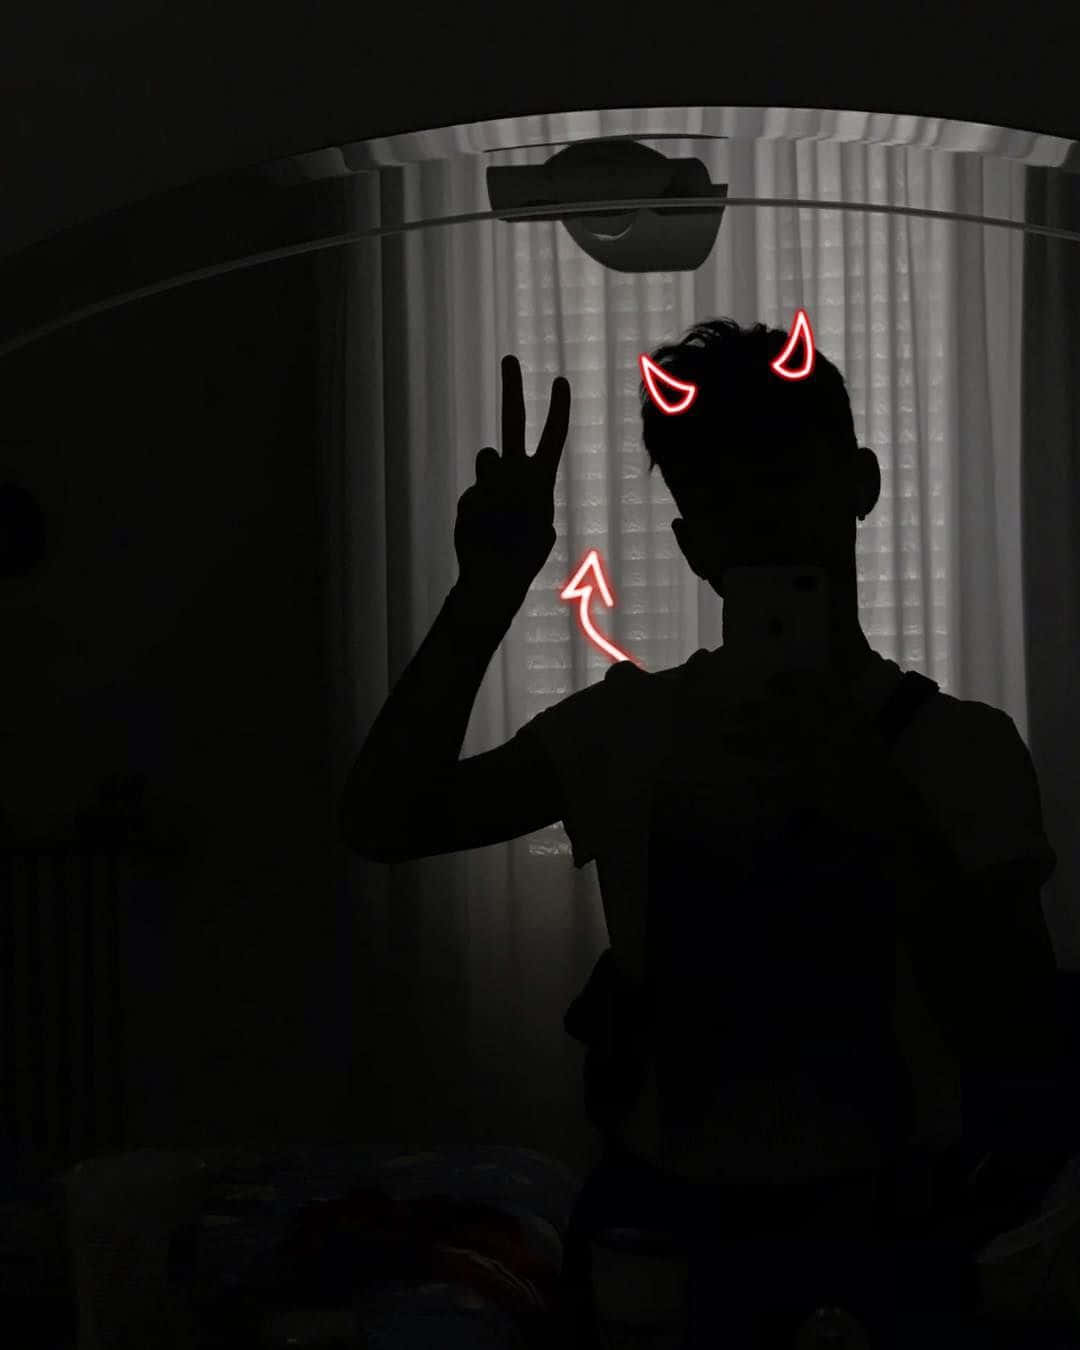 Aesthetic Instagram Devil Man Silhouette Wallpaper